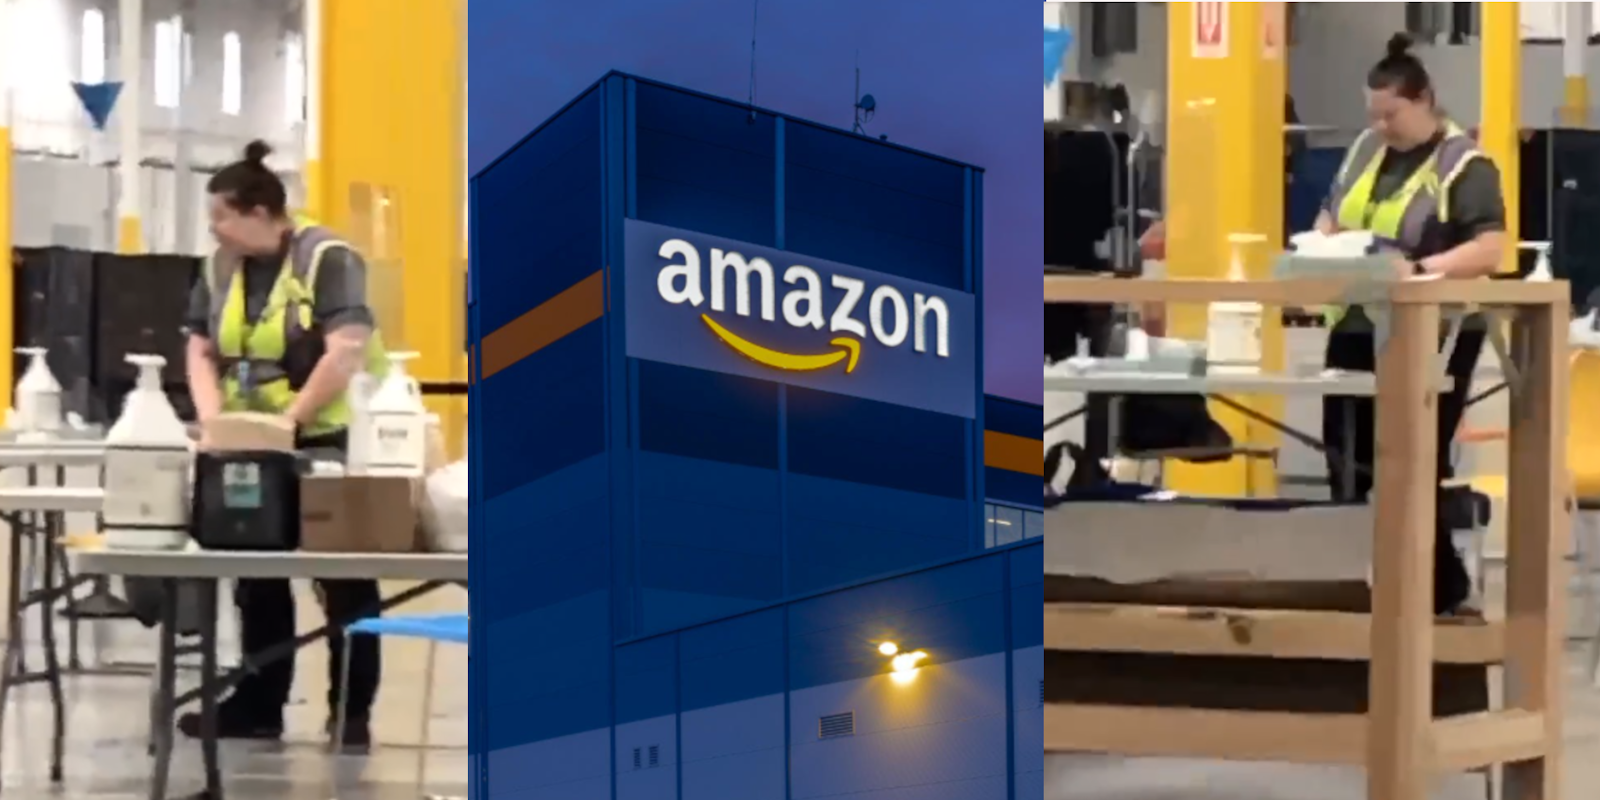 Amazon union busting